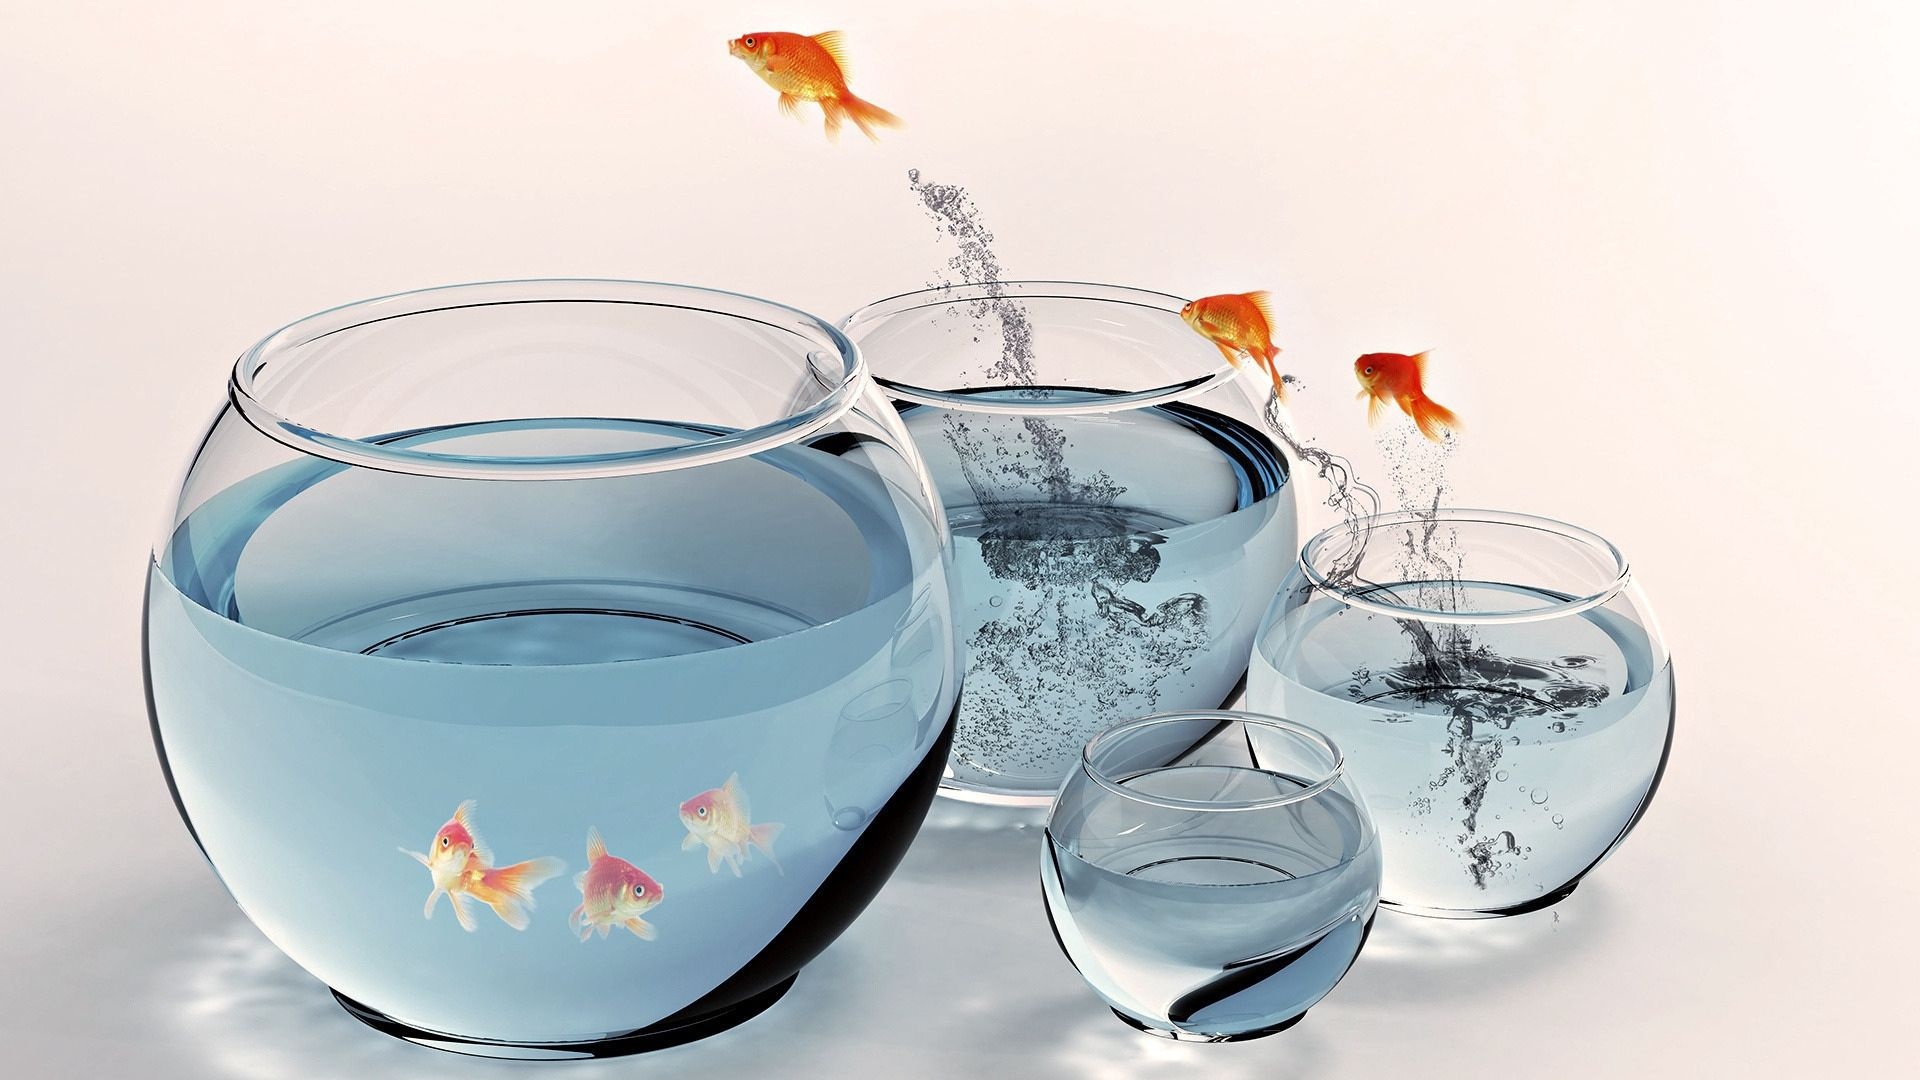 Fishbowl, Fish aquarium, Gold splashing, Jumping, 1920x1080 Full HD Desktop